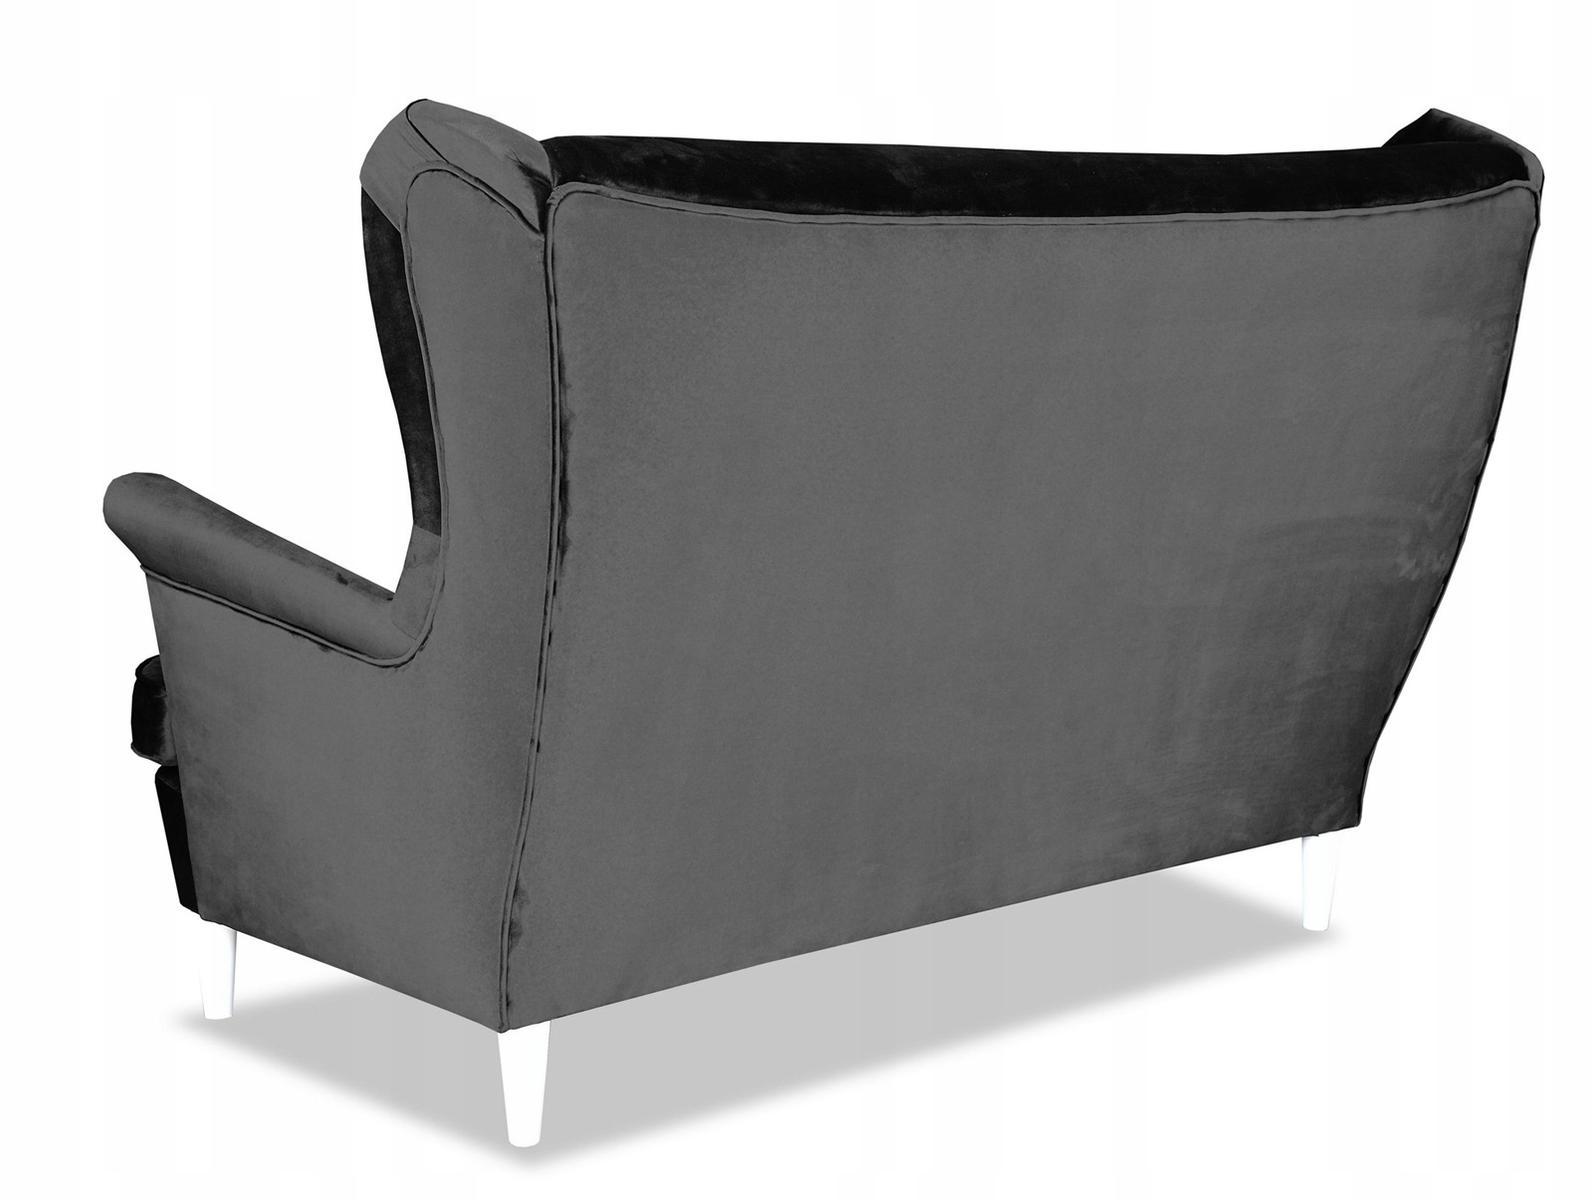 Zestaw wypoczynkowy sofa + 2 fotele Family Meble 3 Full Screen